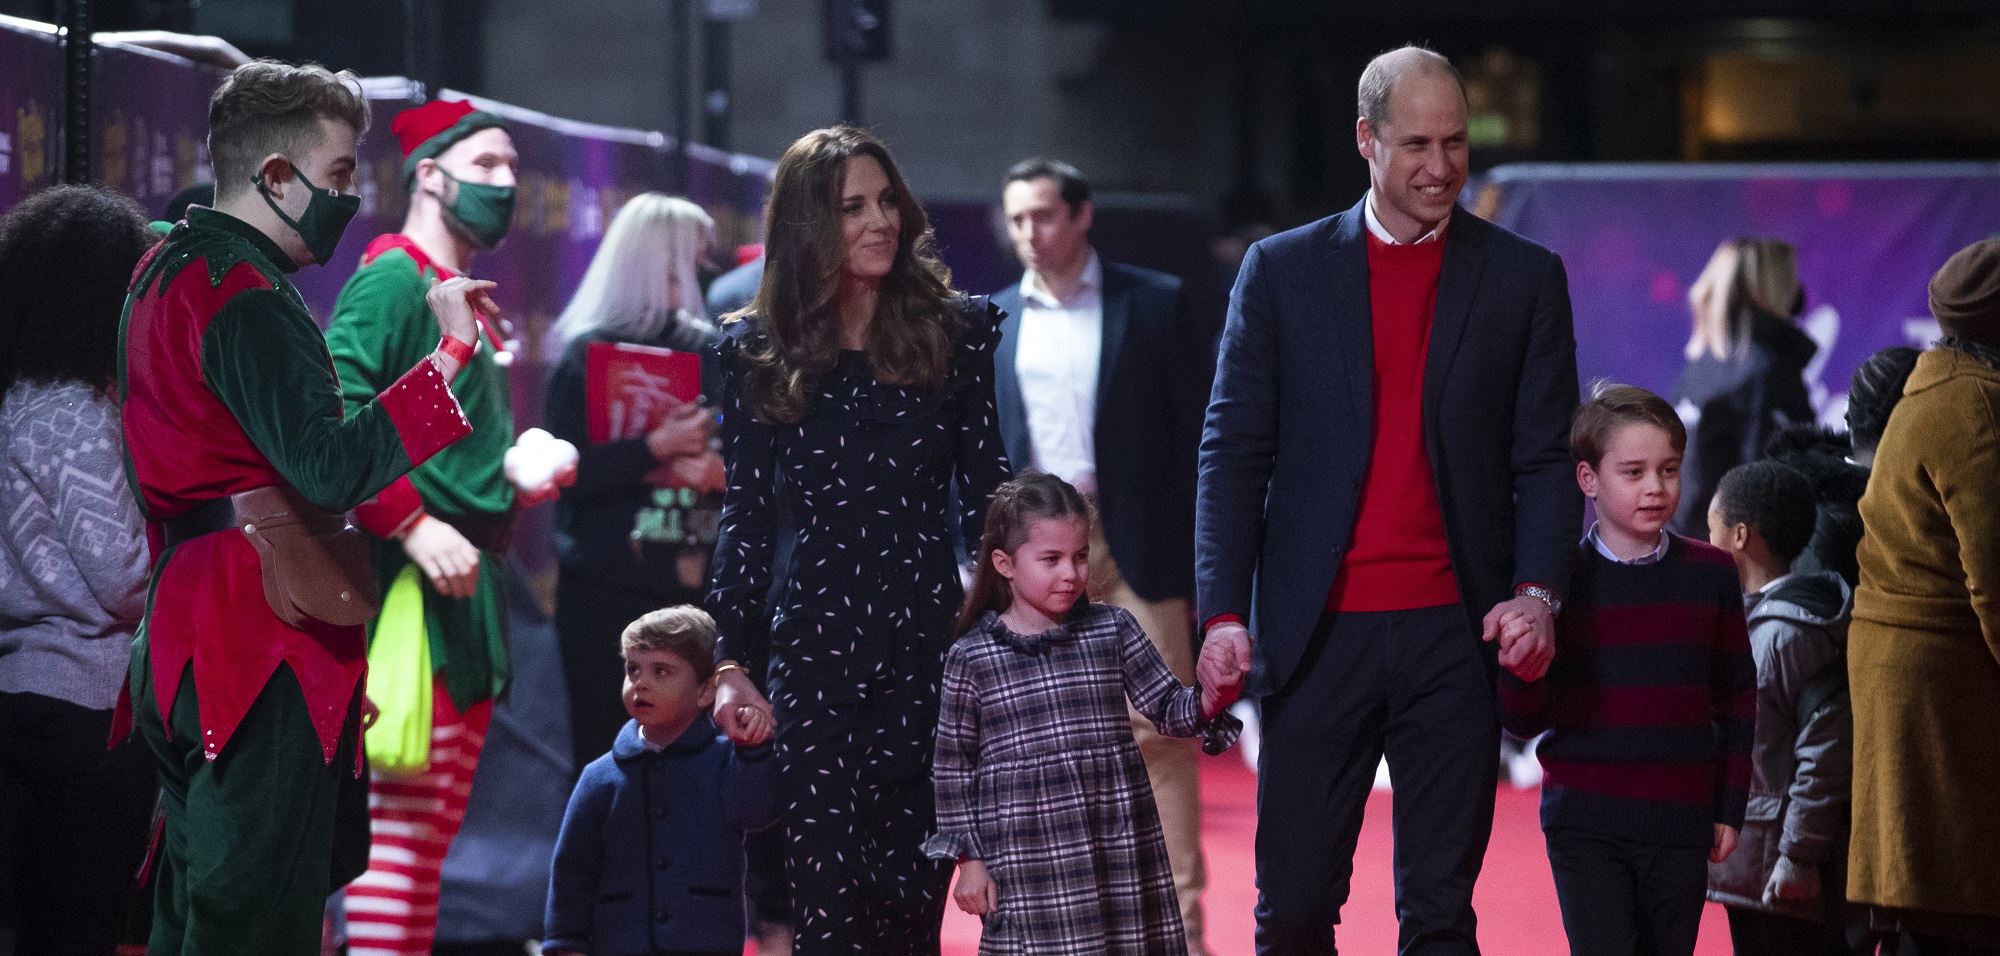 El encuentro familiar del príncipe William y Kate Middleton en medio de pandemia que generó polémica